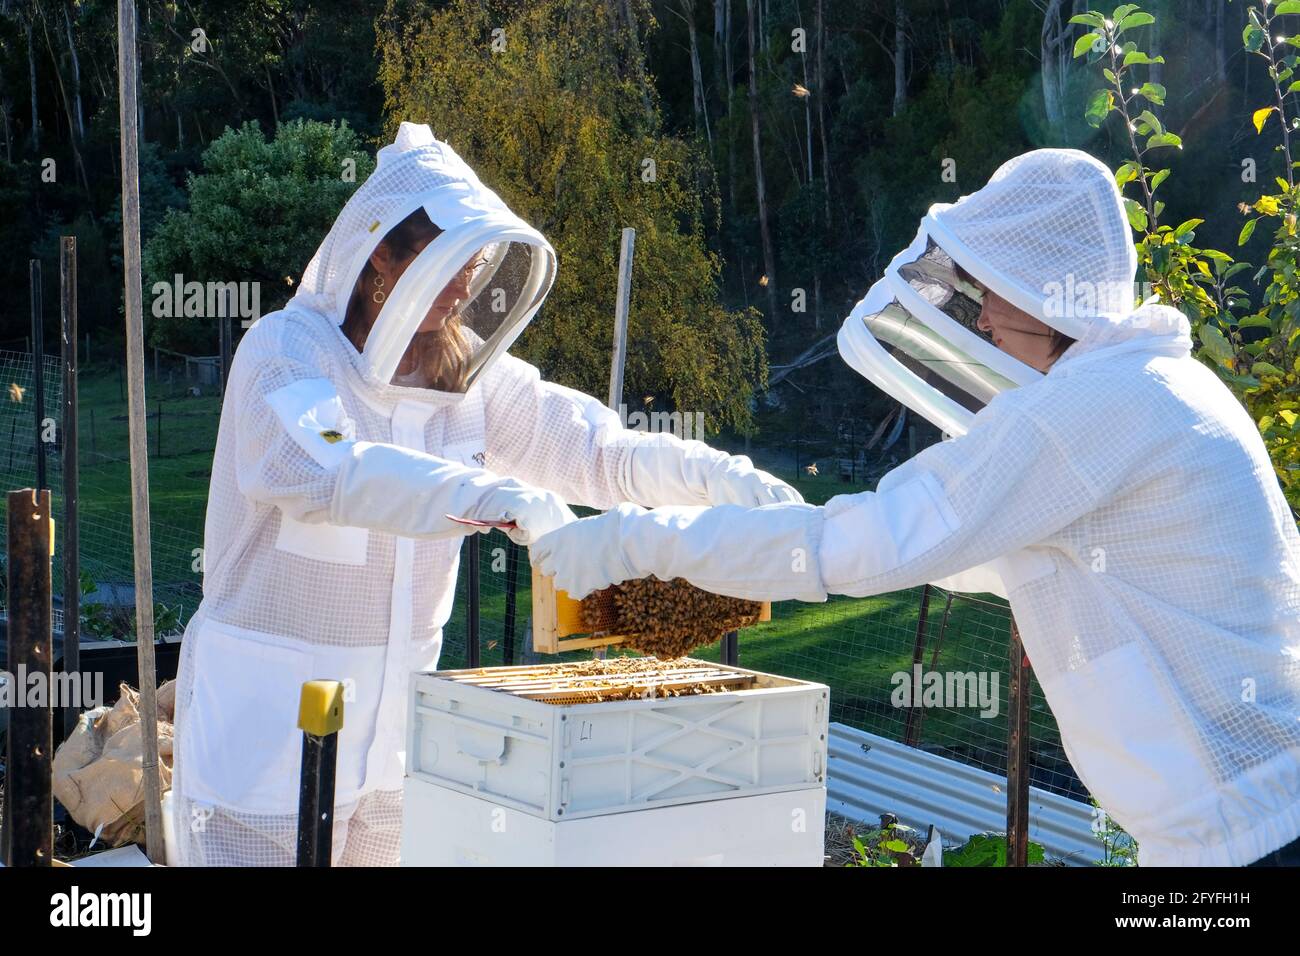 Imker und Assistent tragen Schutzkleidung, während die Gesundheit des Bienenstocks überprüft wird. Stockfoto